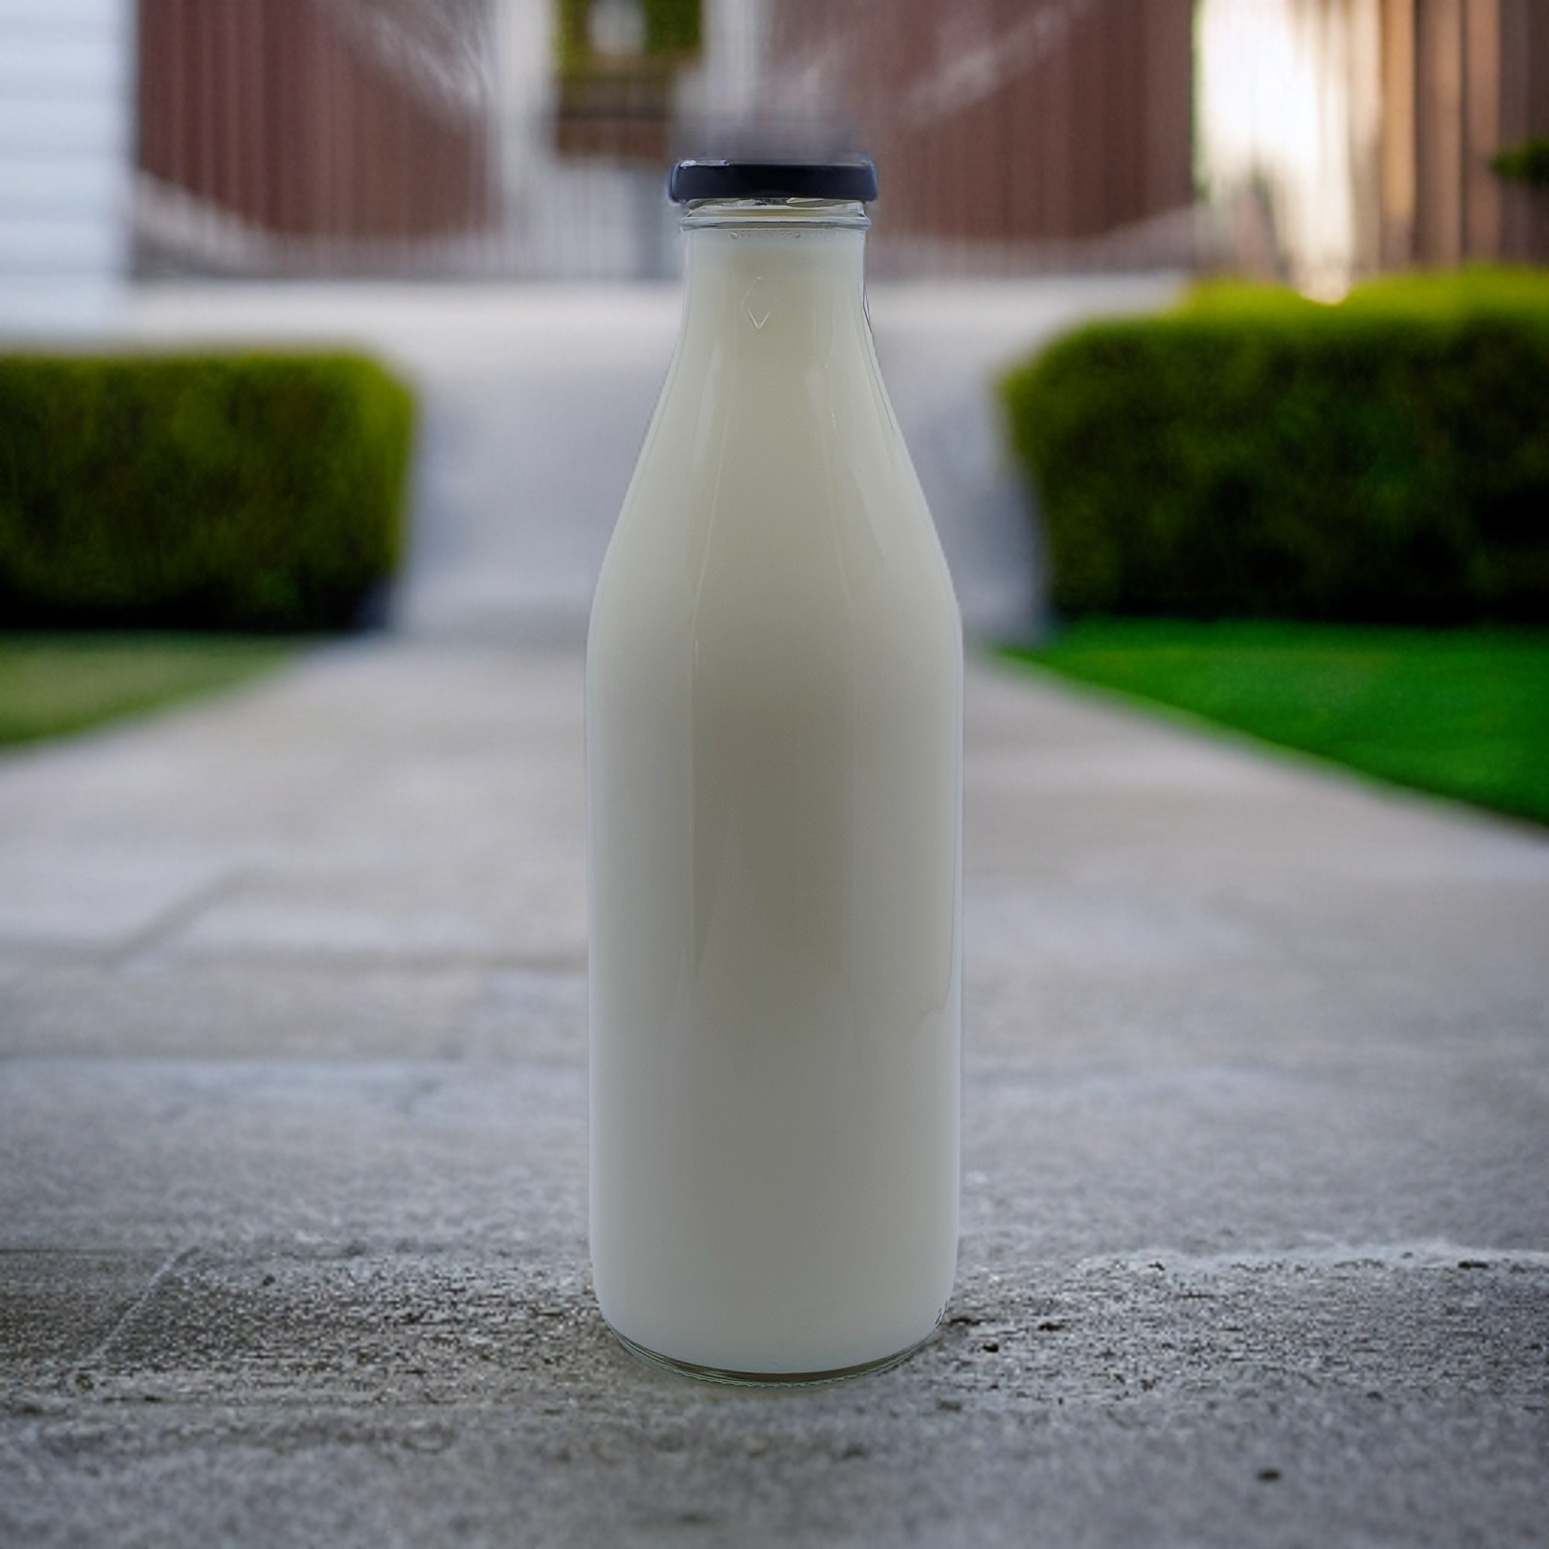 1 Litre Round Milk Glass Bottle With 43mm Twist Cap - 24 Bottles